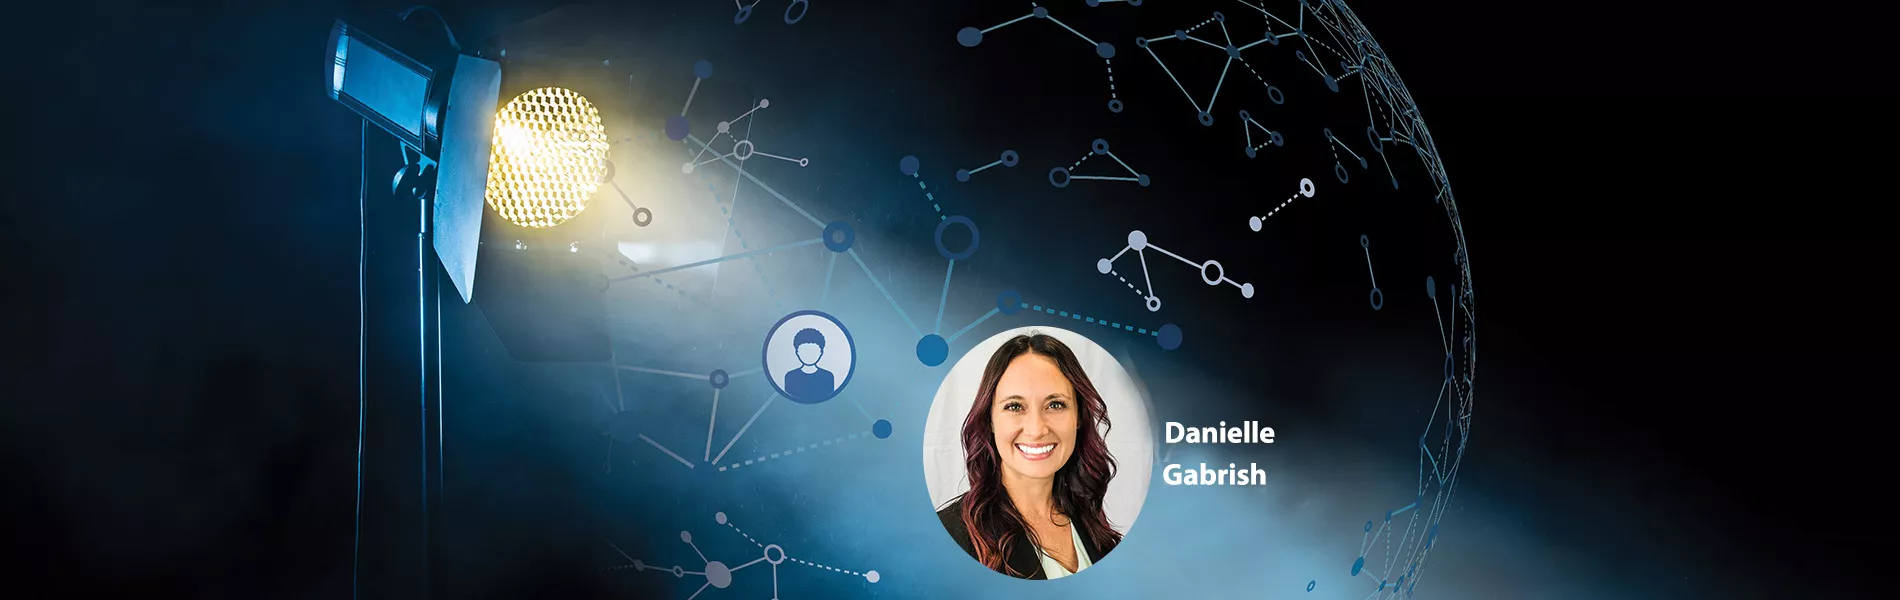 Member Spotlight: Danielle Gabrish